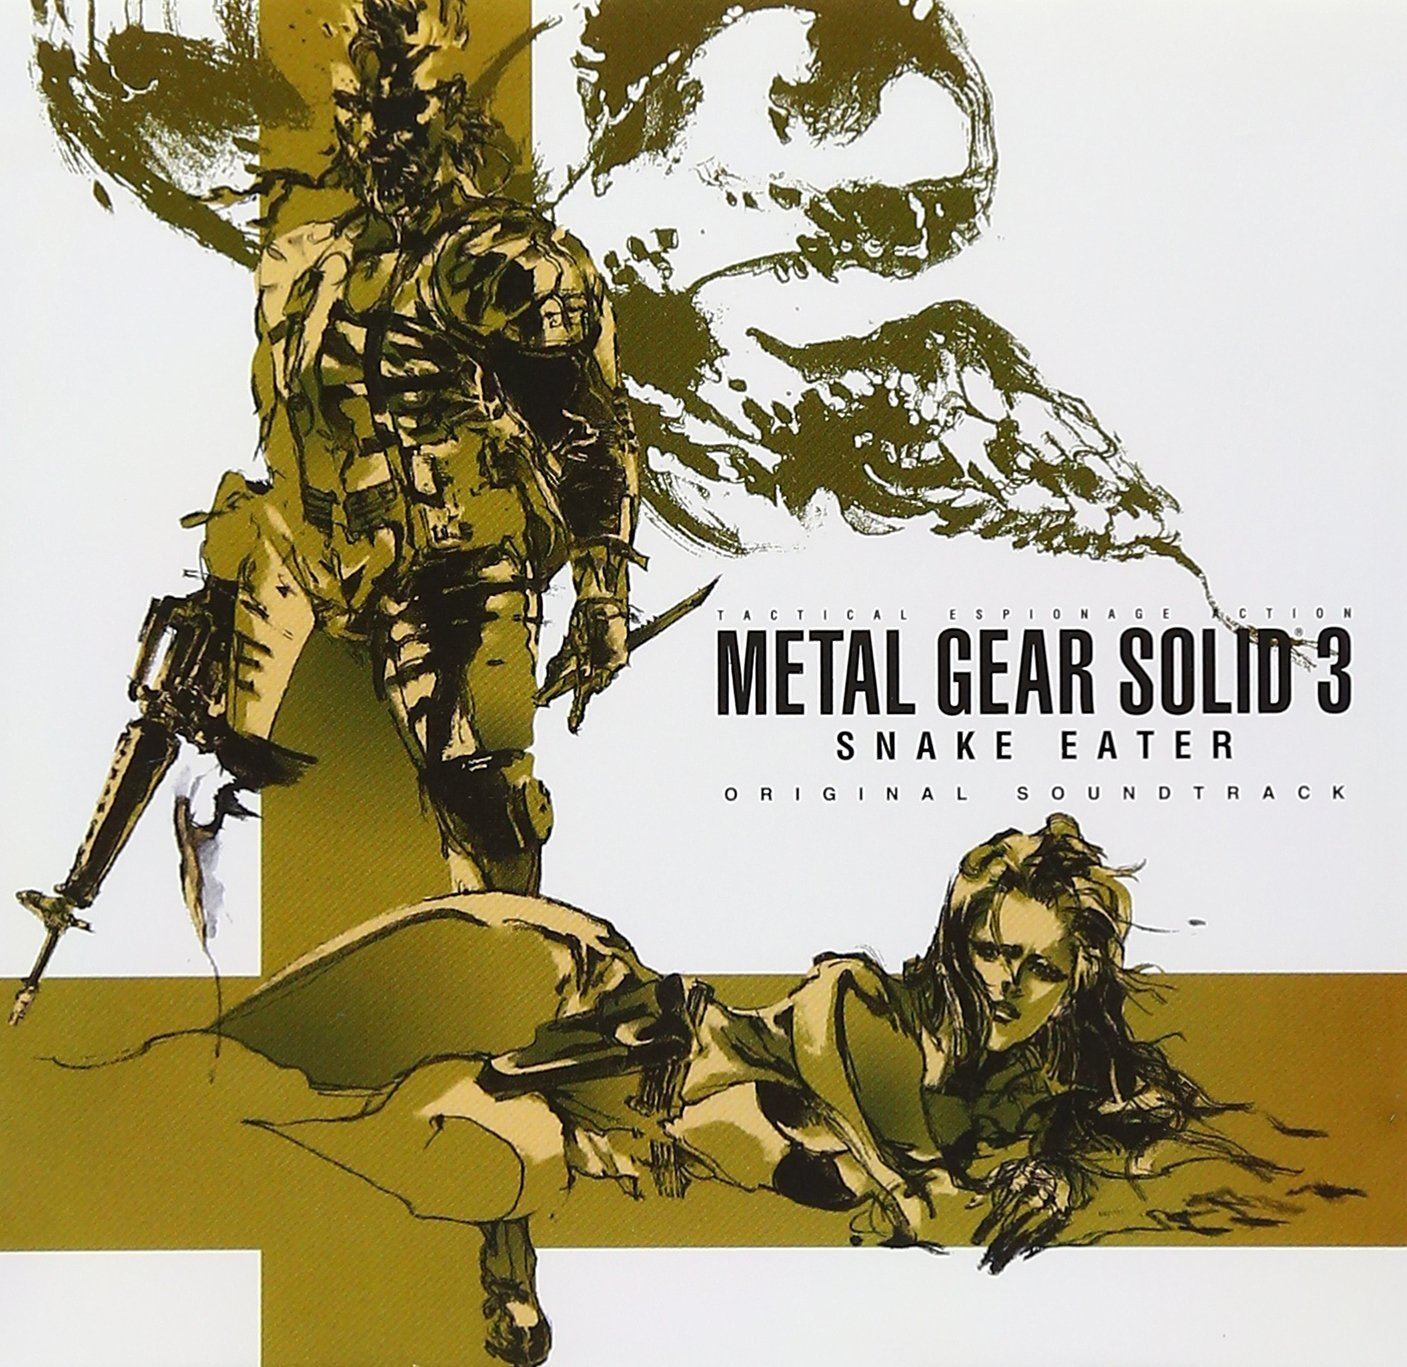 Video Game Soundtrack - Metal Gear Solid 3 Snake Eater Original Soundtrack1500 x 1500